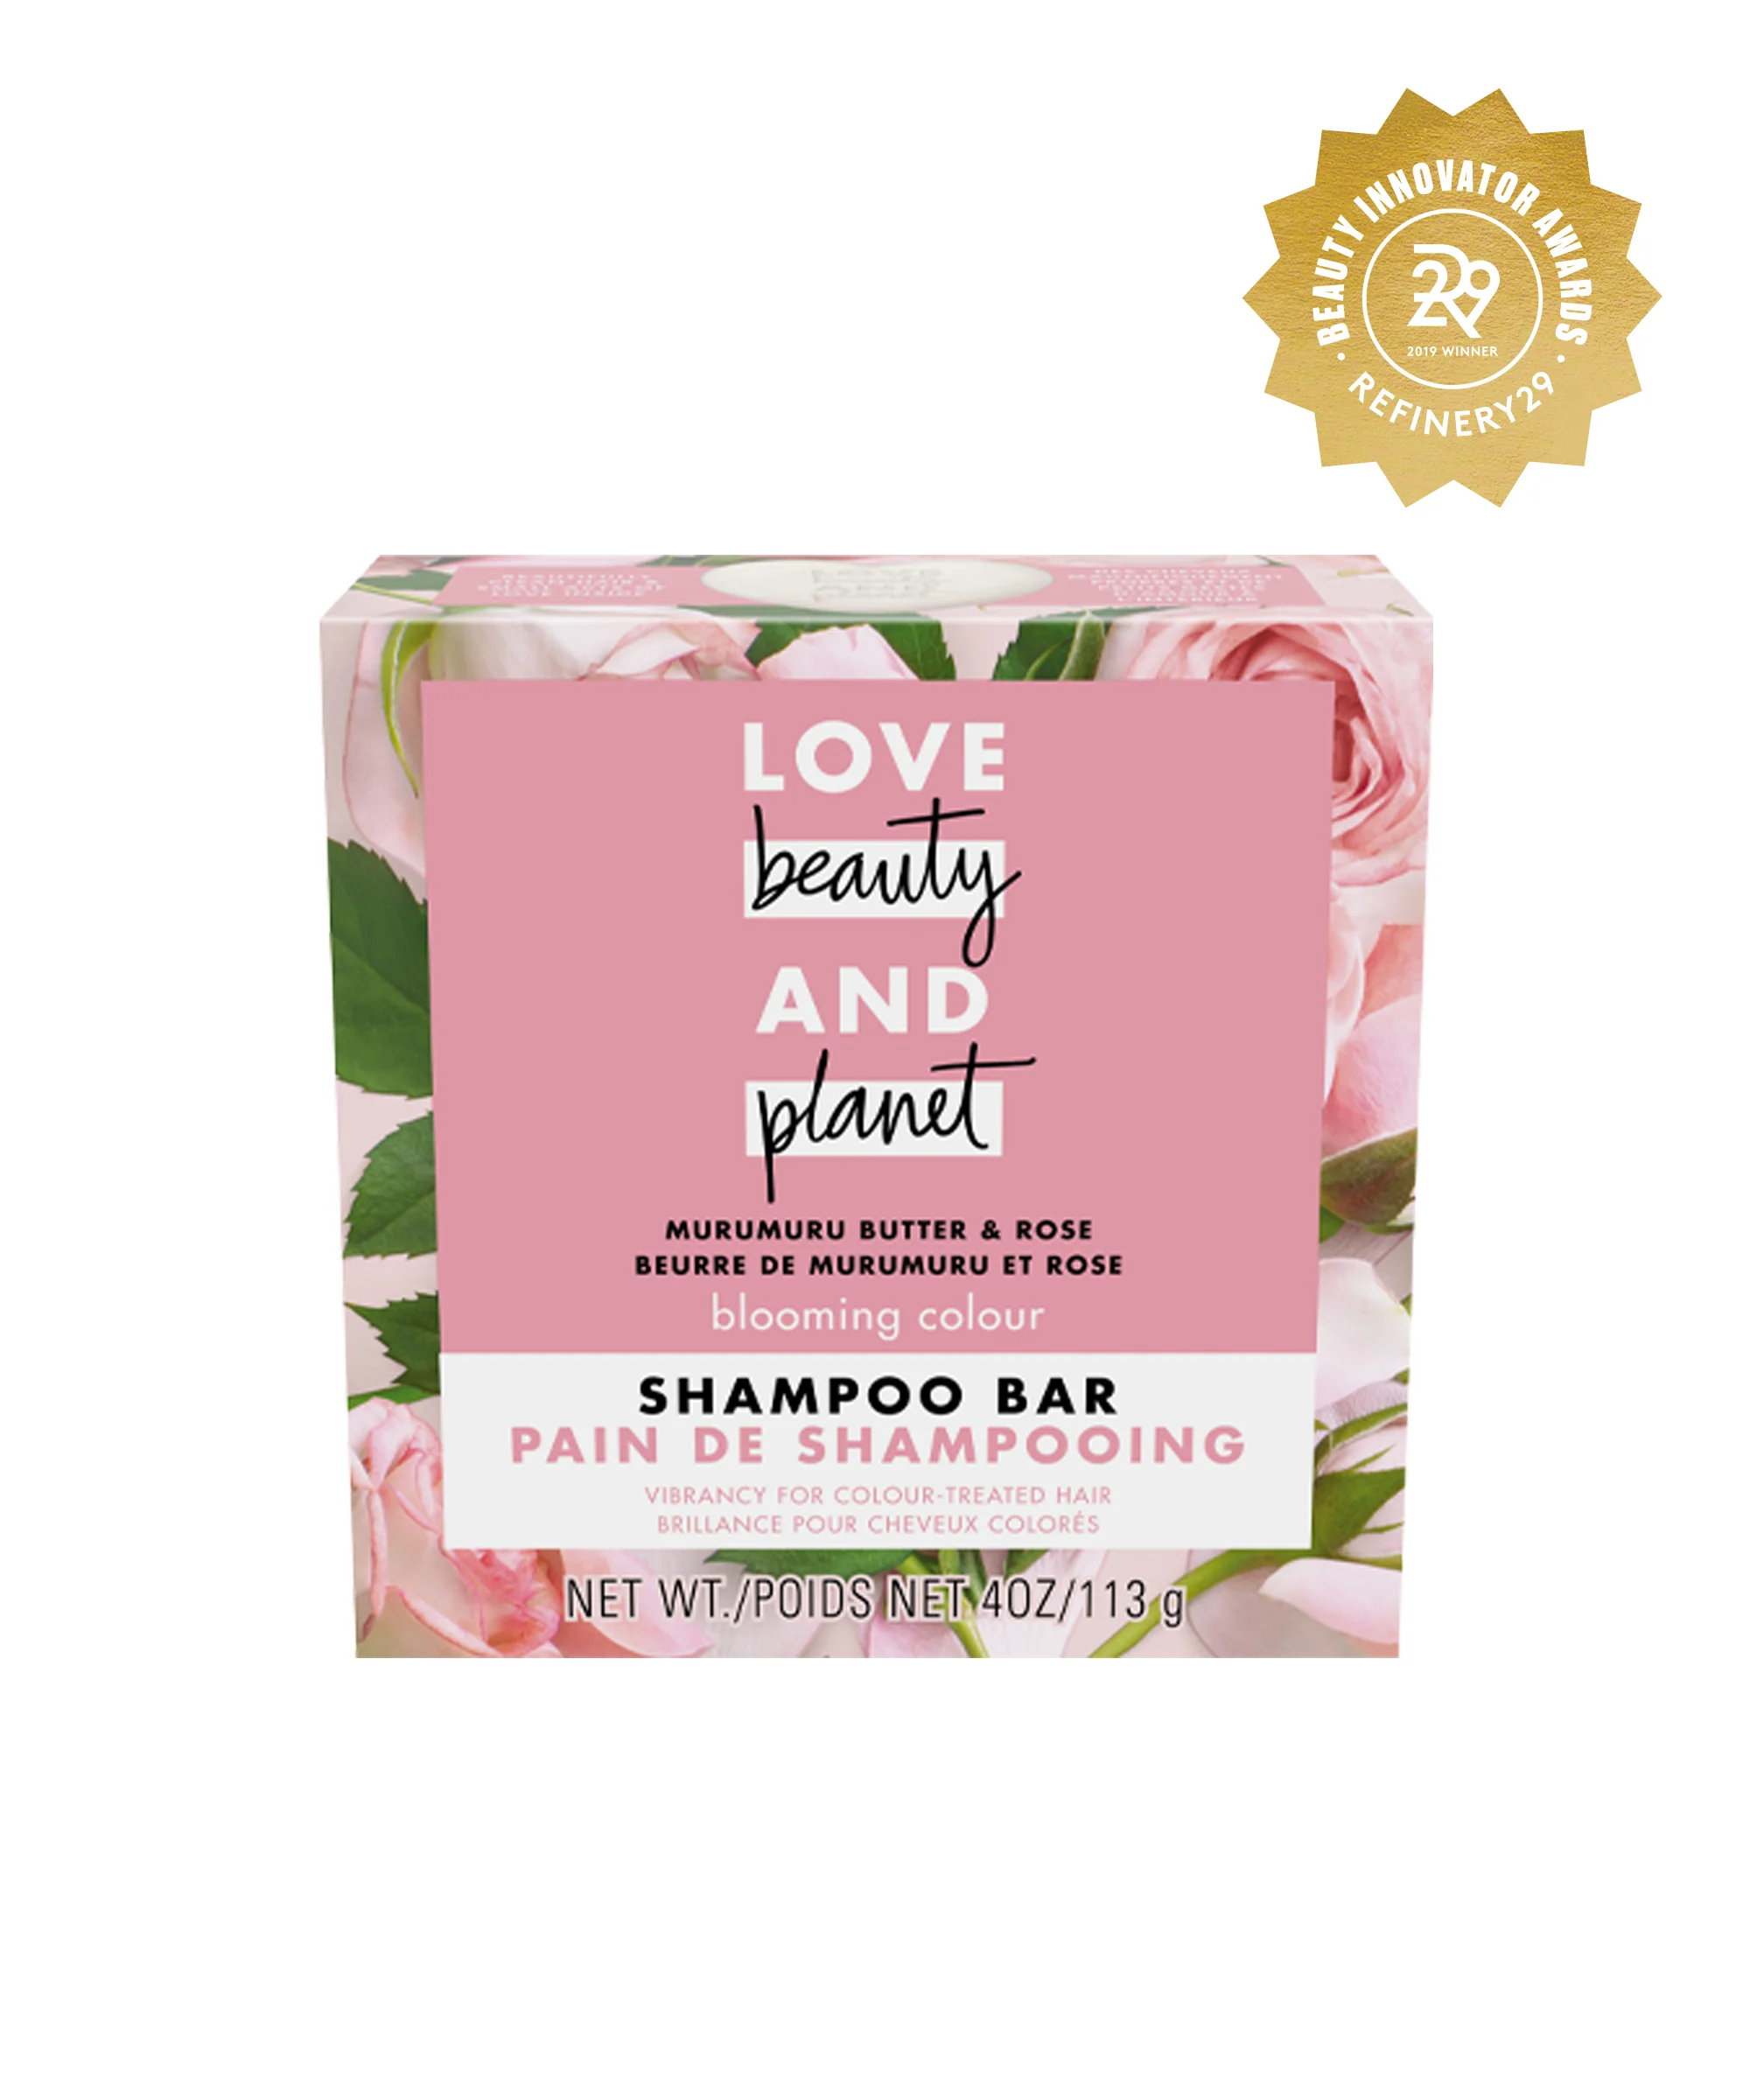 Love Beauty and Planet + Murumuru Butter & Rose Shampoo Bar